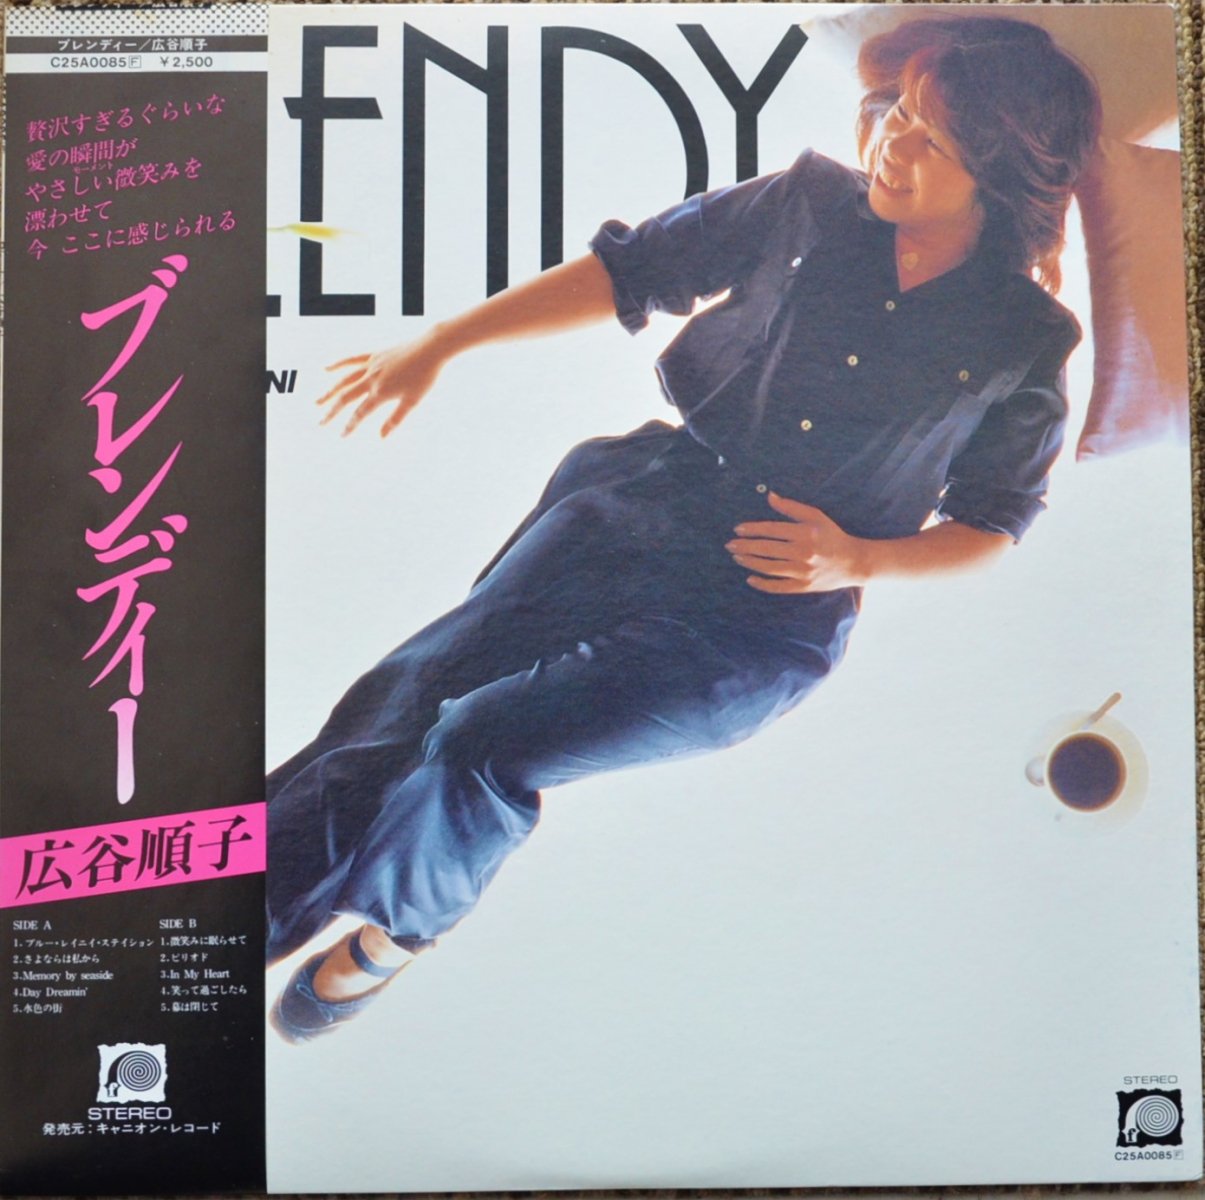 広谷順子 JUNKO HIROTANI / ブレンディー BLENDY (LP) - HIP TANK RECORDS